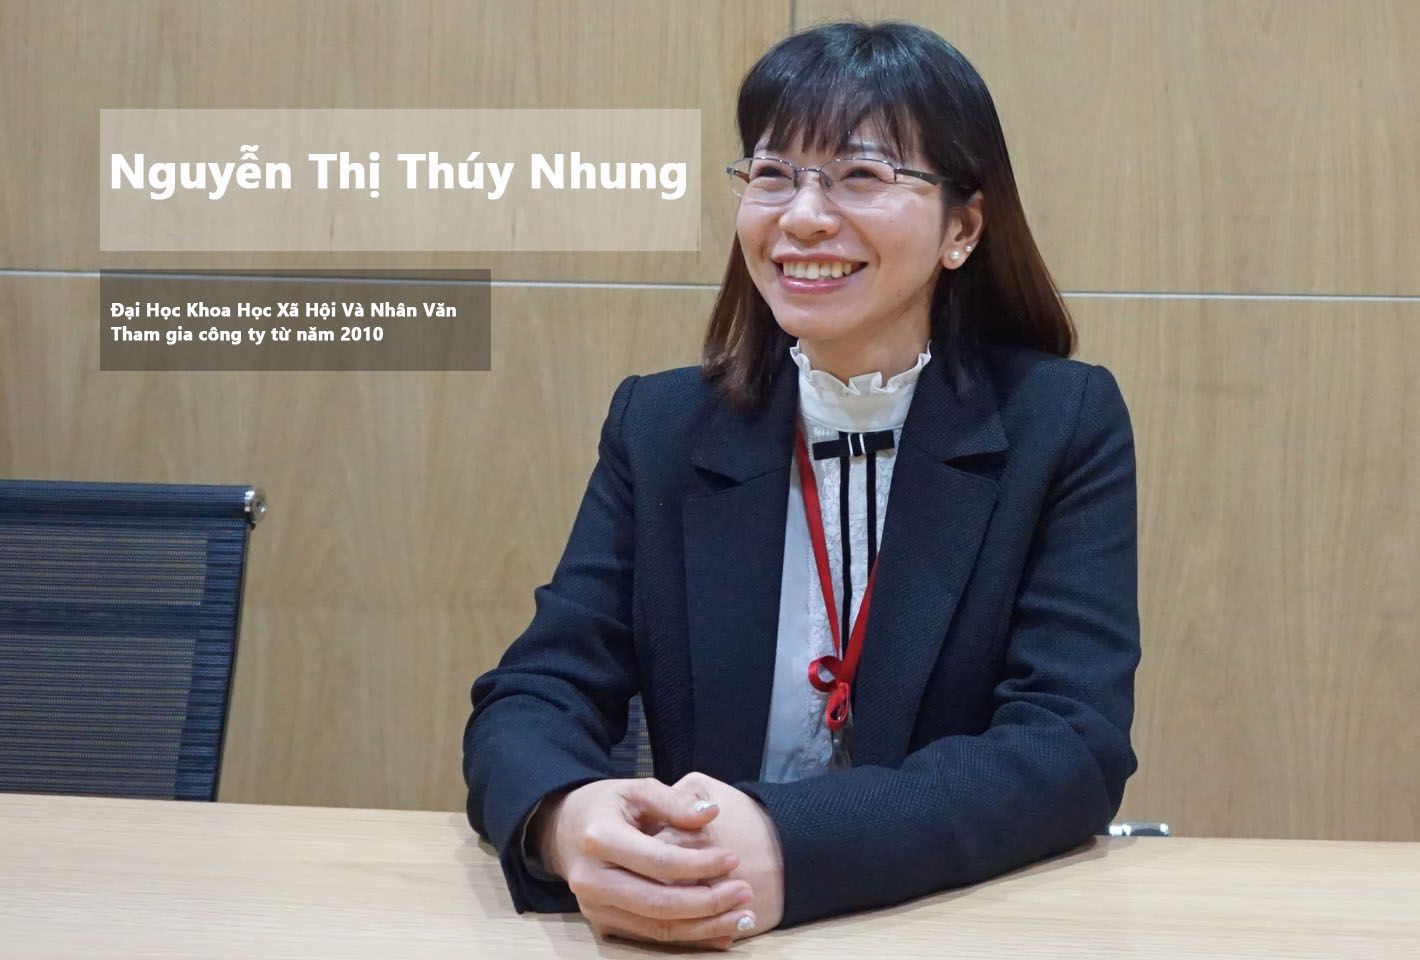 Anh Nguyễn Thành Lân cựu sinh viên trường Đại Học Ngoại Ngữ Tin Học TPHCM.